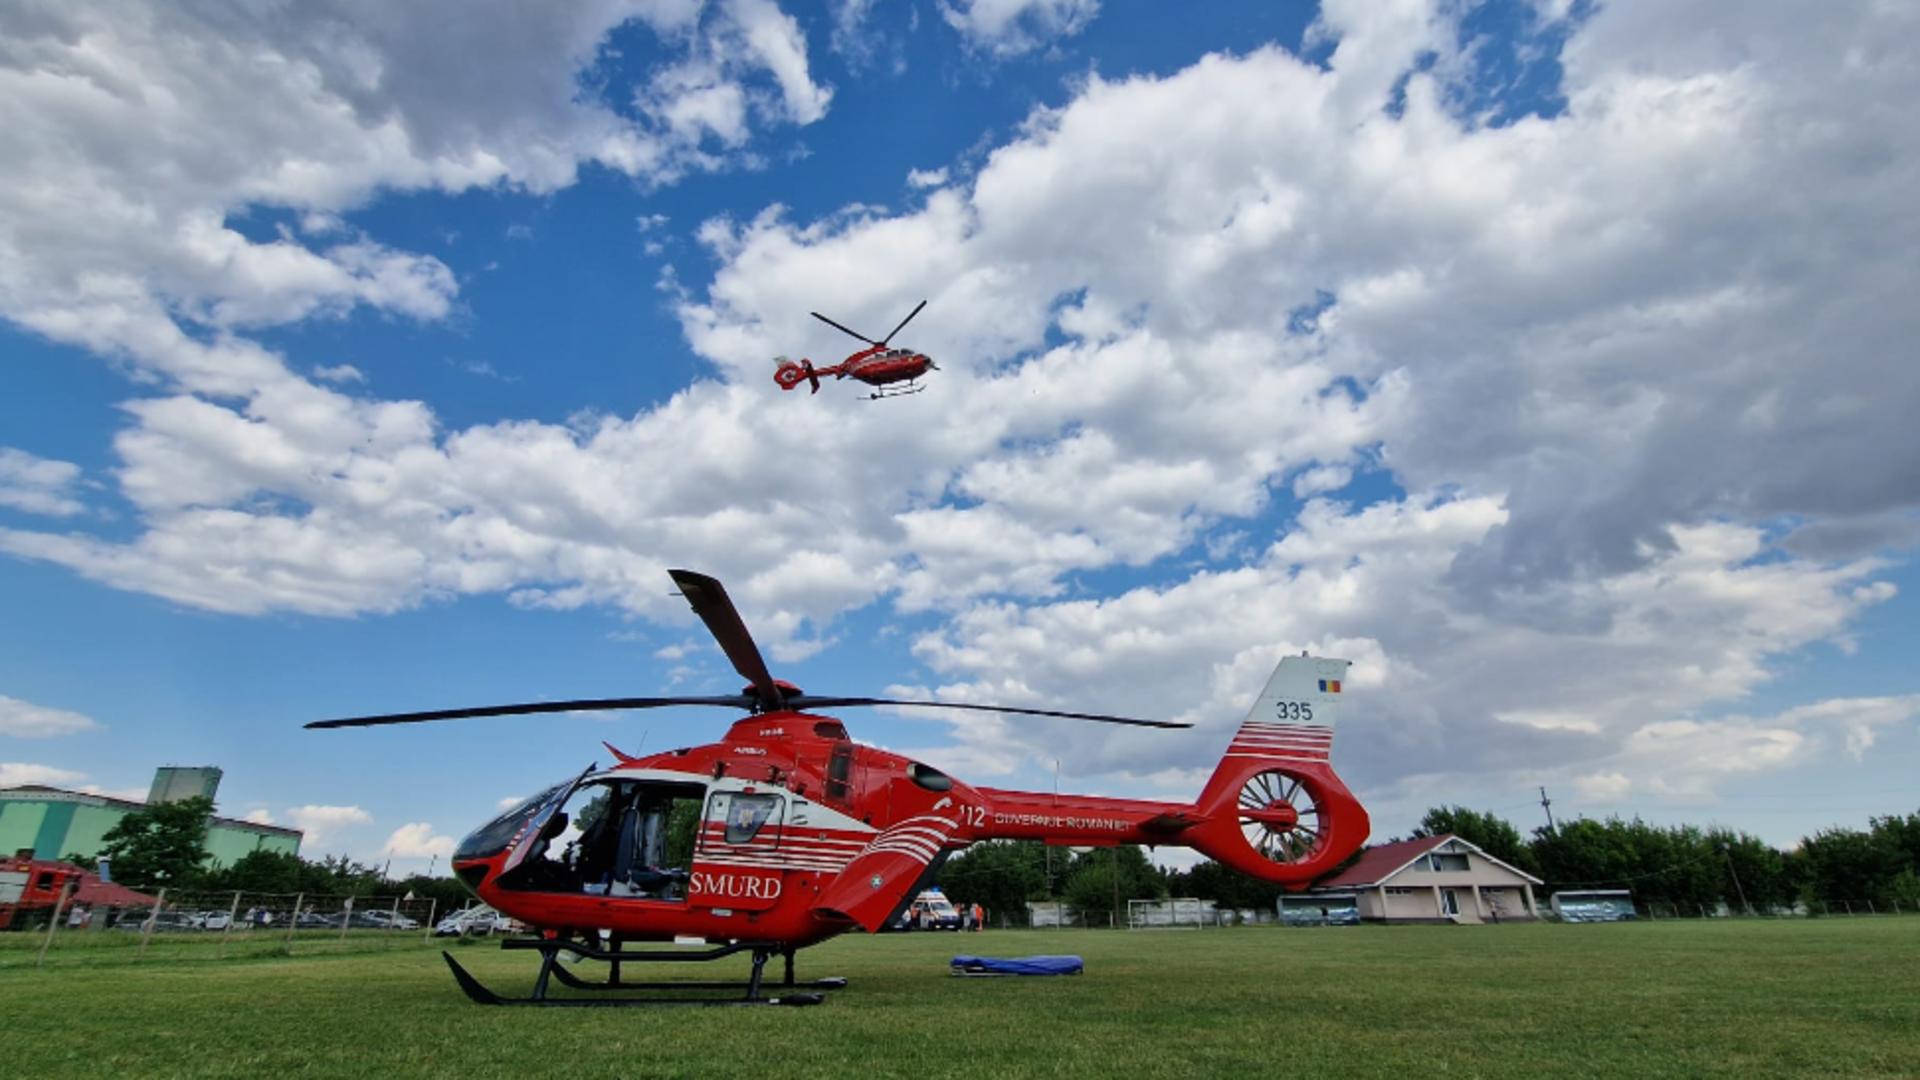 Cinci persoane, rănite într-un accident în județul Giurgiu. A fost solicitat elicopterul SMURD